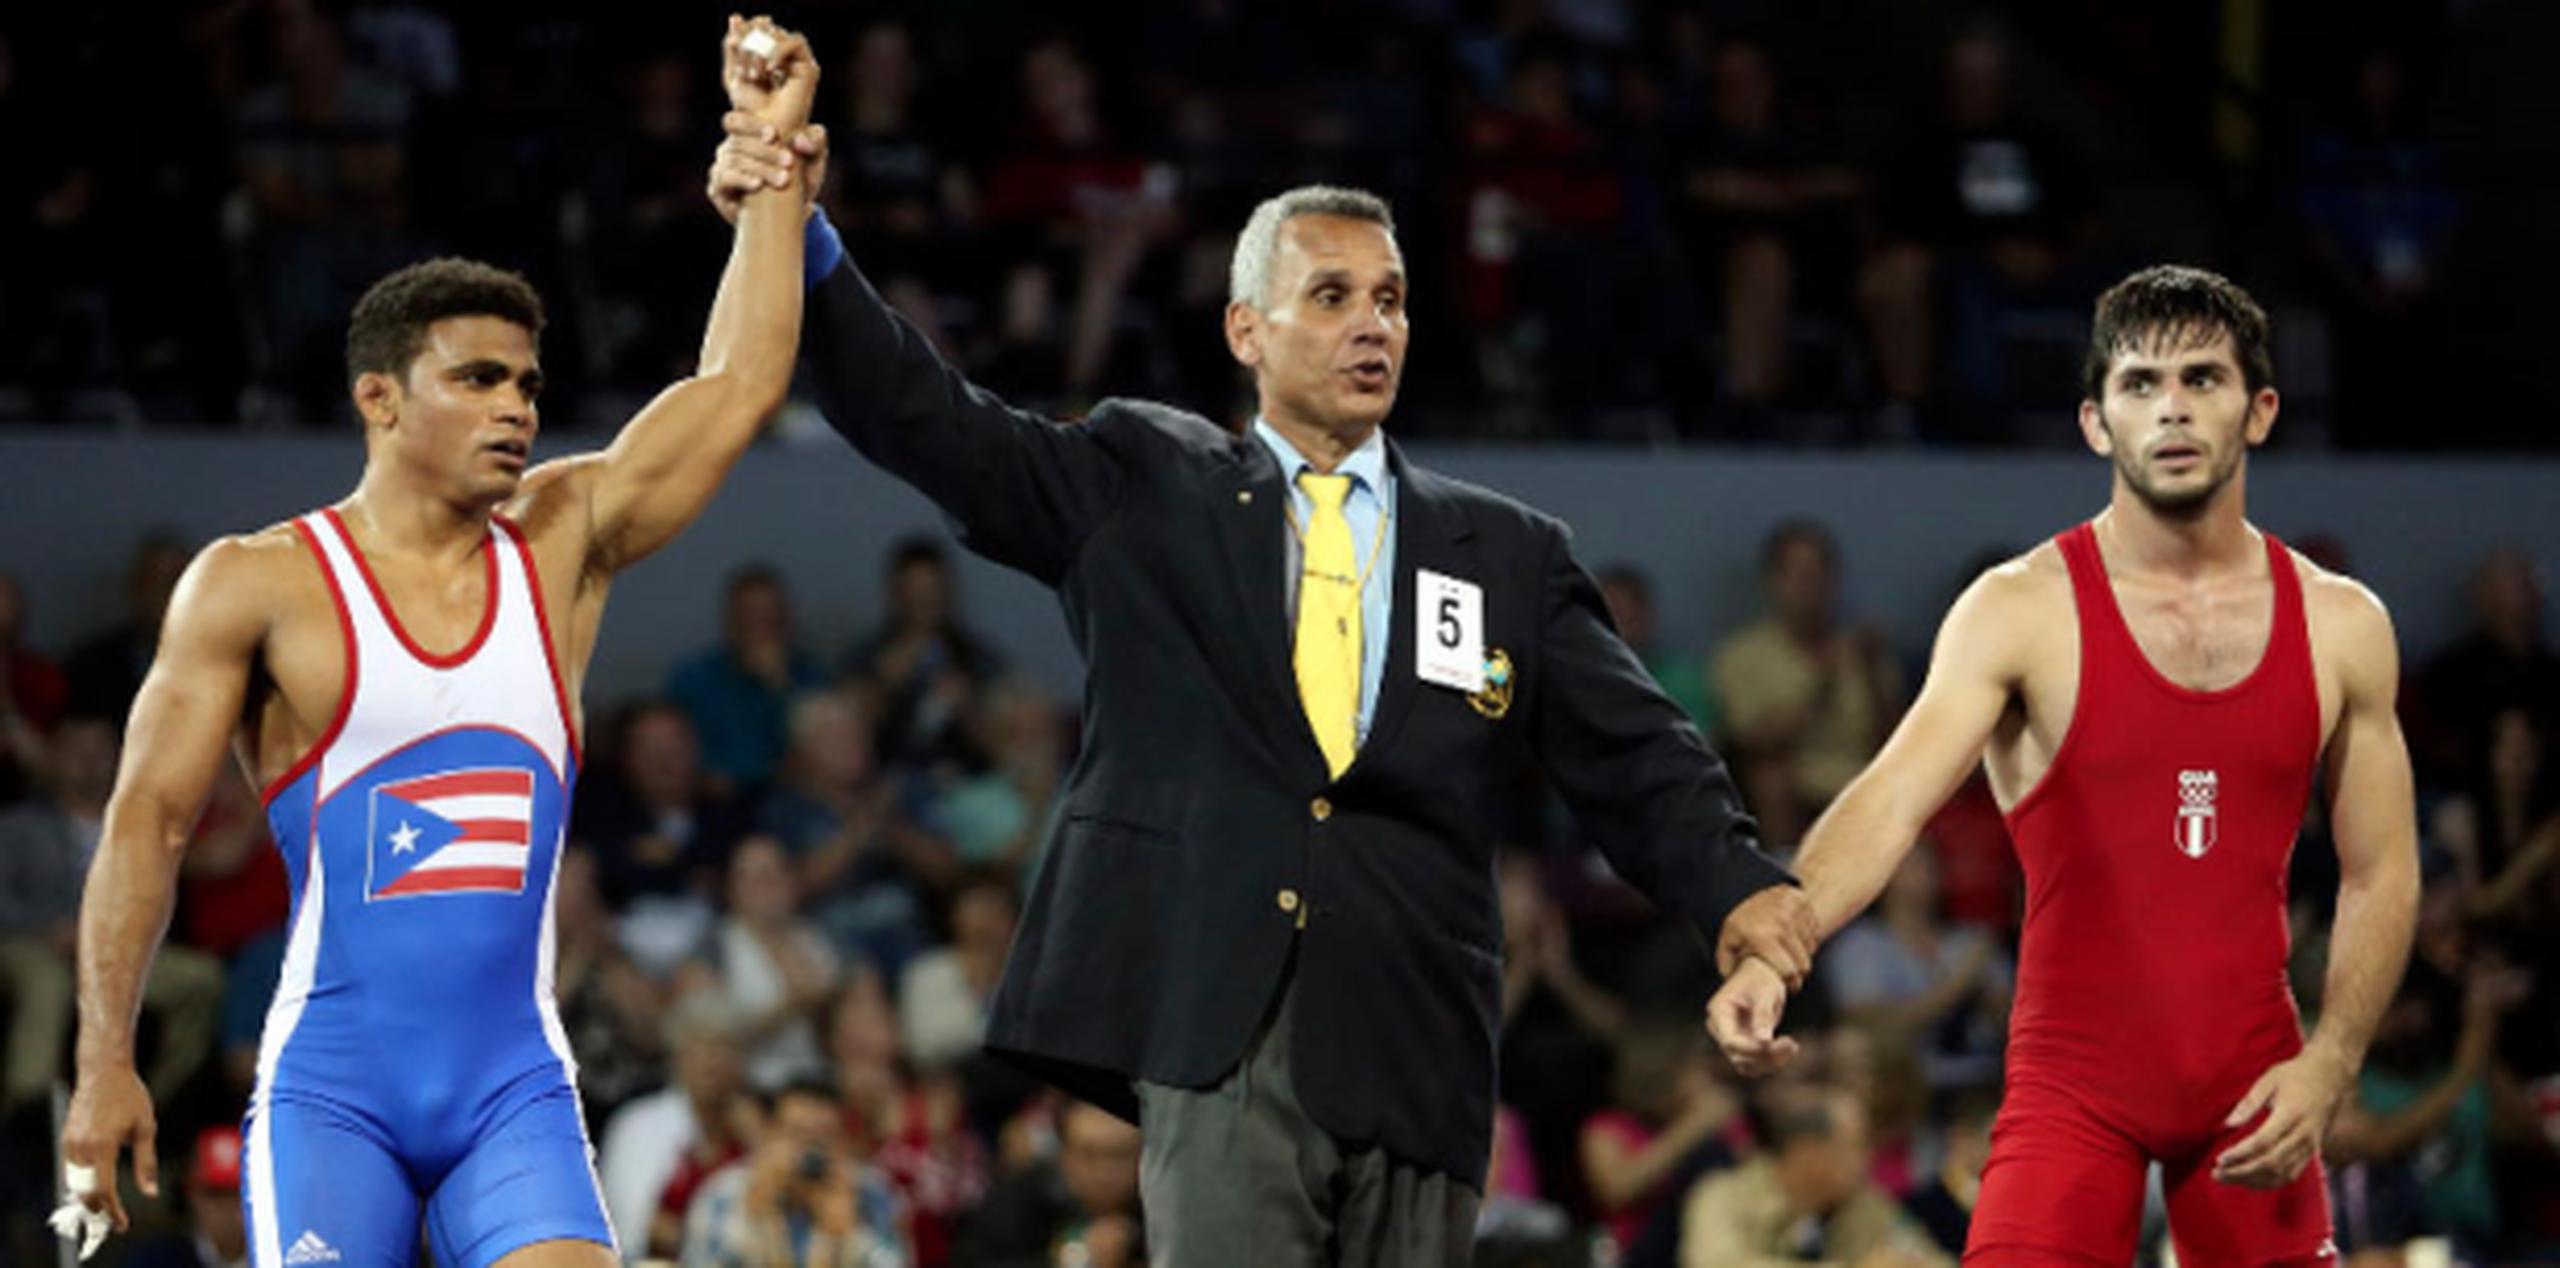 En general, fue el tercer bronce bronce para Puerto Rico, junto a las medallas del judoca Augusto Miranda y la tenista Mónica Puig Marchán. (juan.martinez@gfrmedia.com)